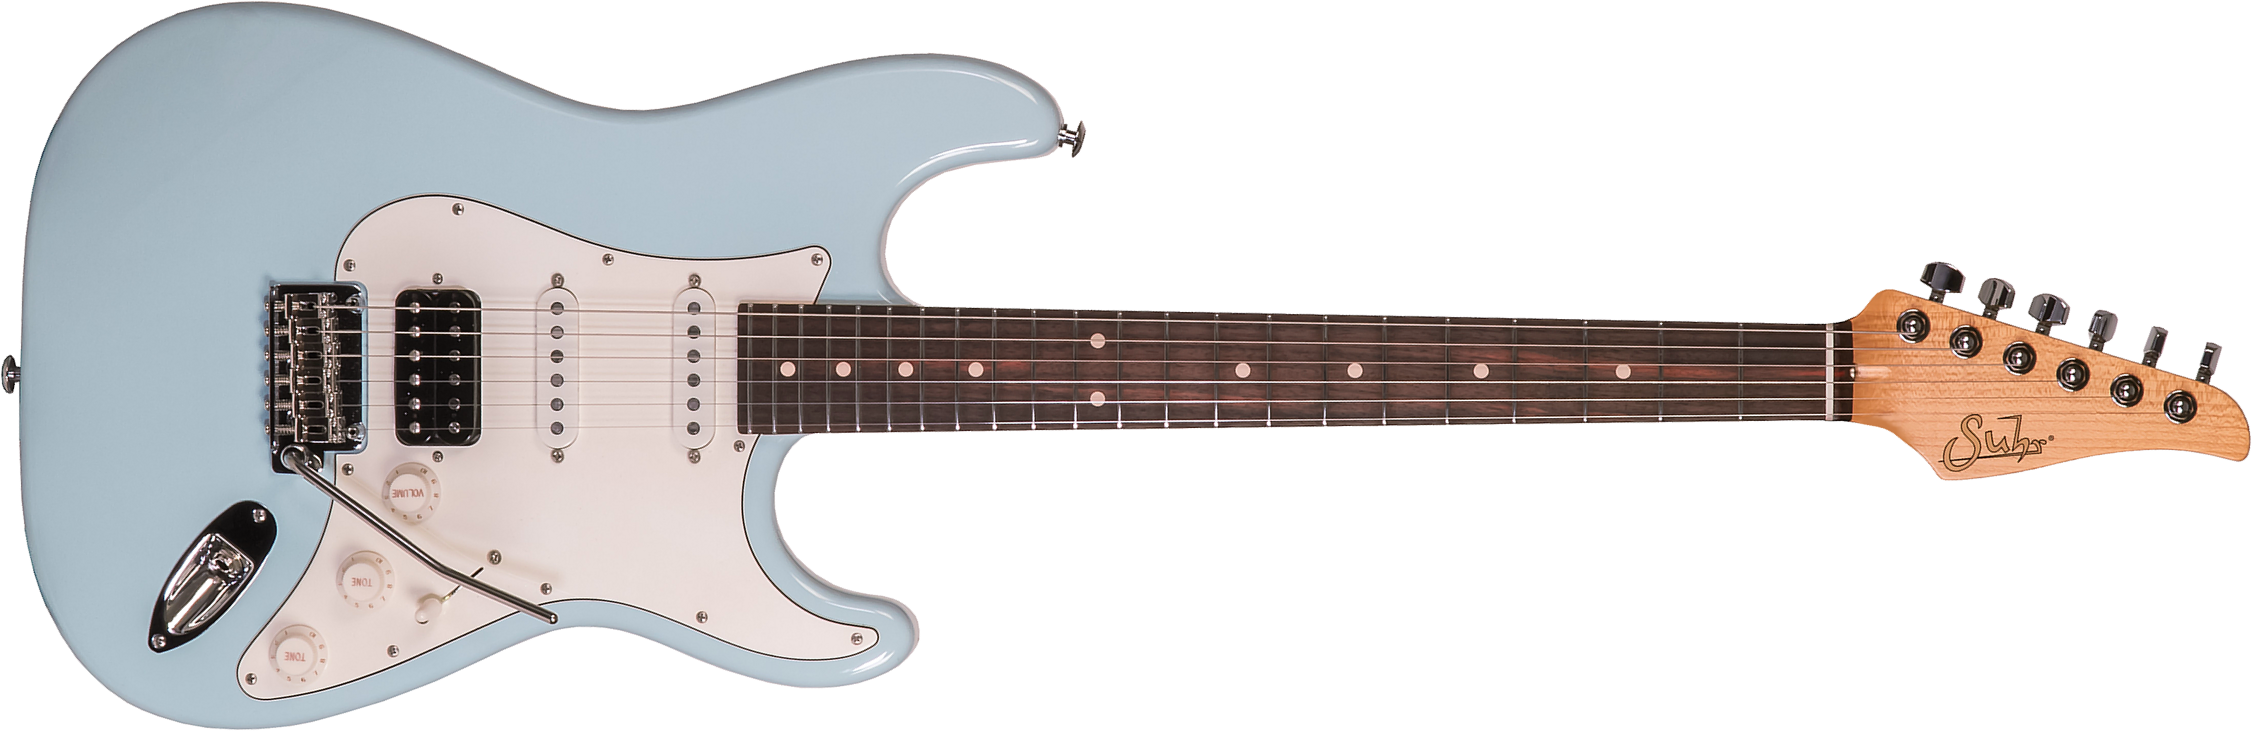 Suhr Classic S Antique Hss 01-csa-0013 Trem Mn #71417 - Light Aging Sonic Blue - Guitarra eléctrica con forma de str. - Main picture